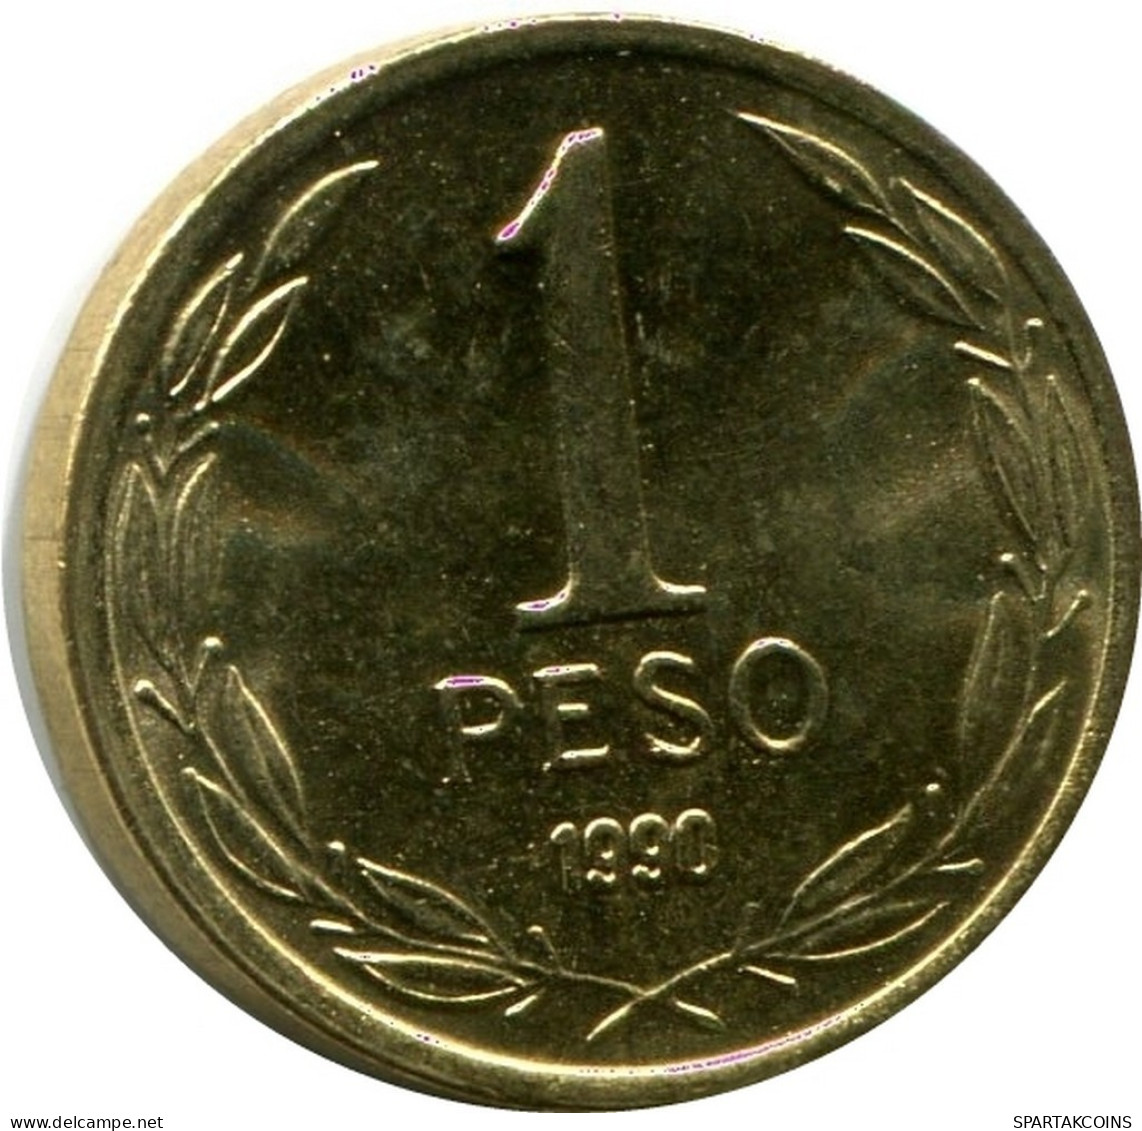 1 PESO 1990 CHILE UNC Münze #M10077.D.A - Cile